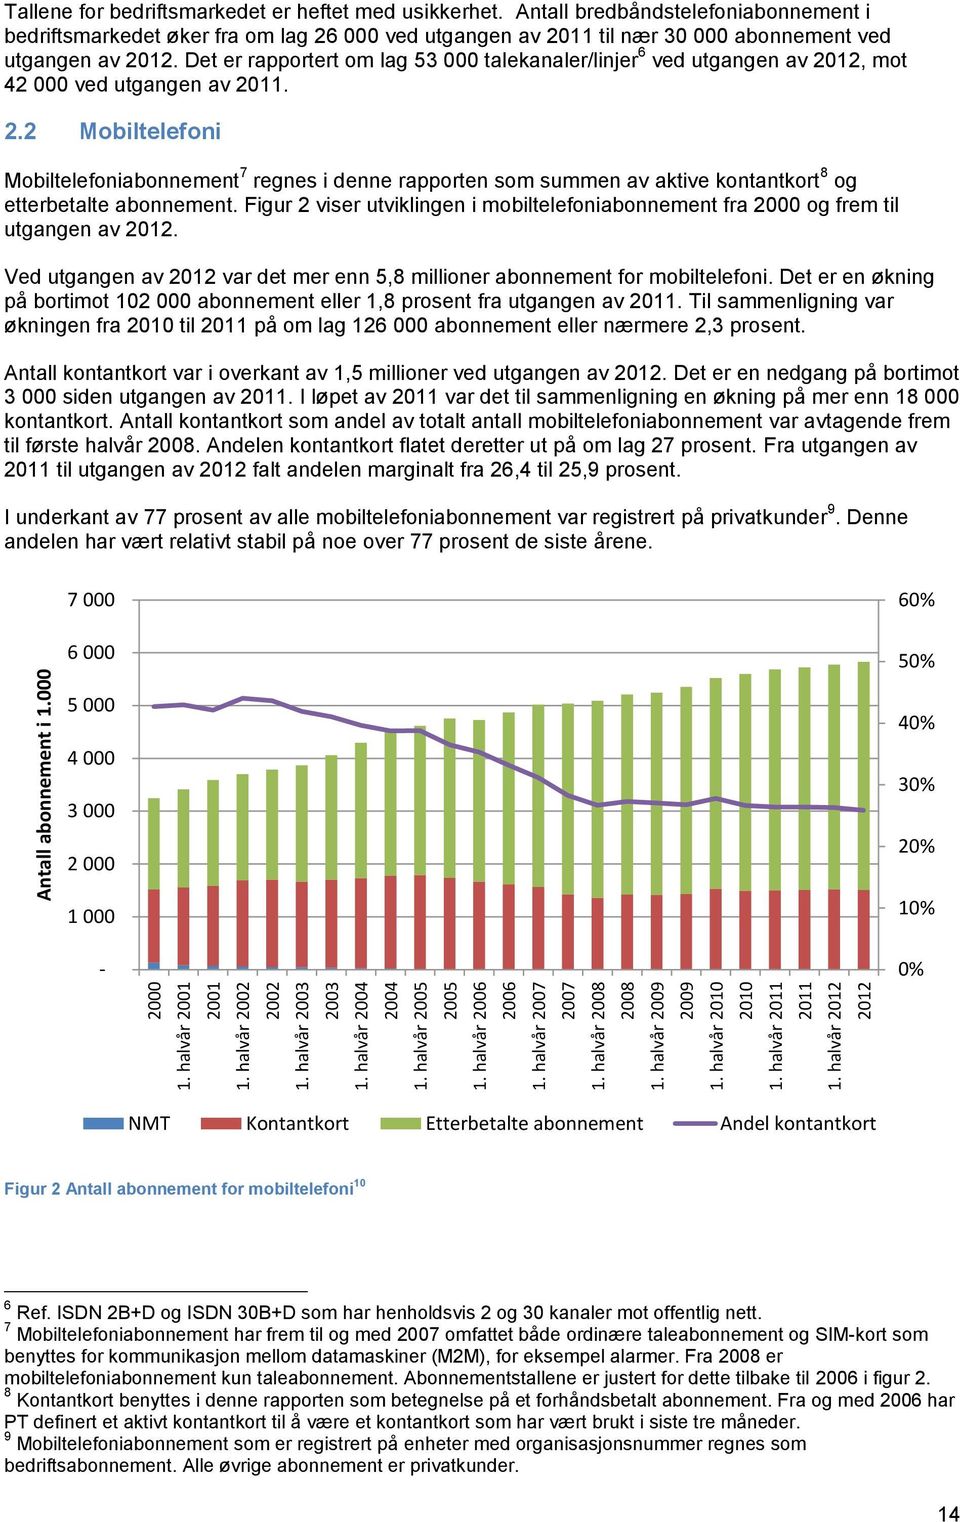 Antall bredbåndstelefoniabonnement i bedriftsmarkedet øker fra om lag 26 000 ved utgangen av 2011 til nær 30 000 abonnement ved utgangen av 2012.